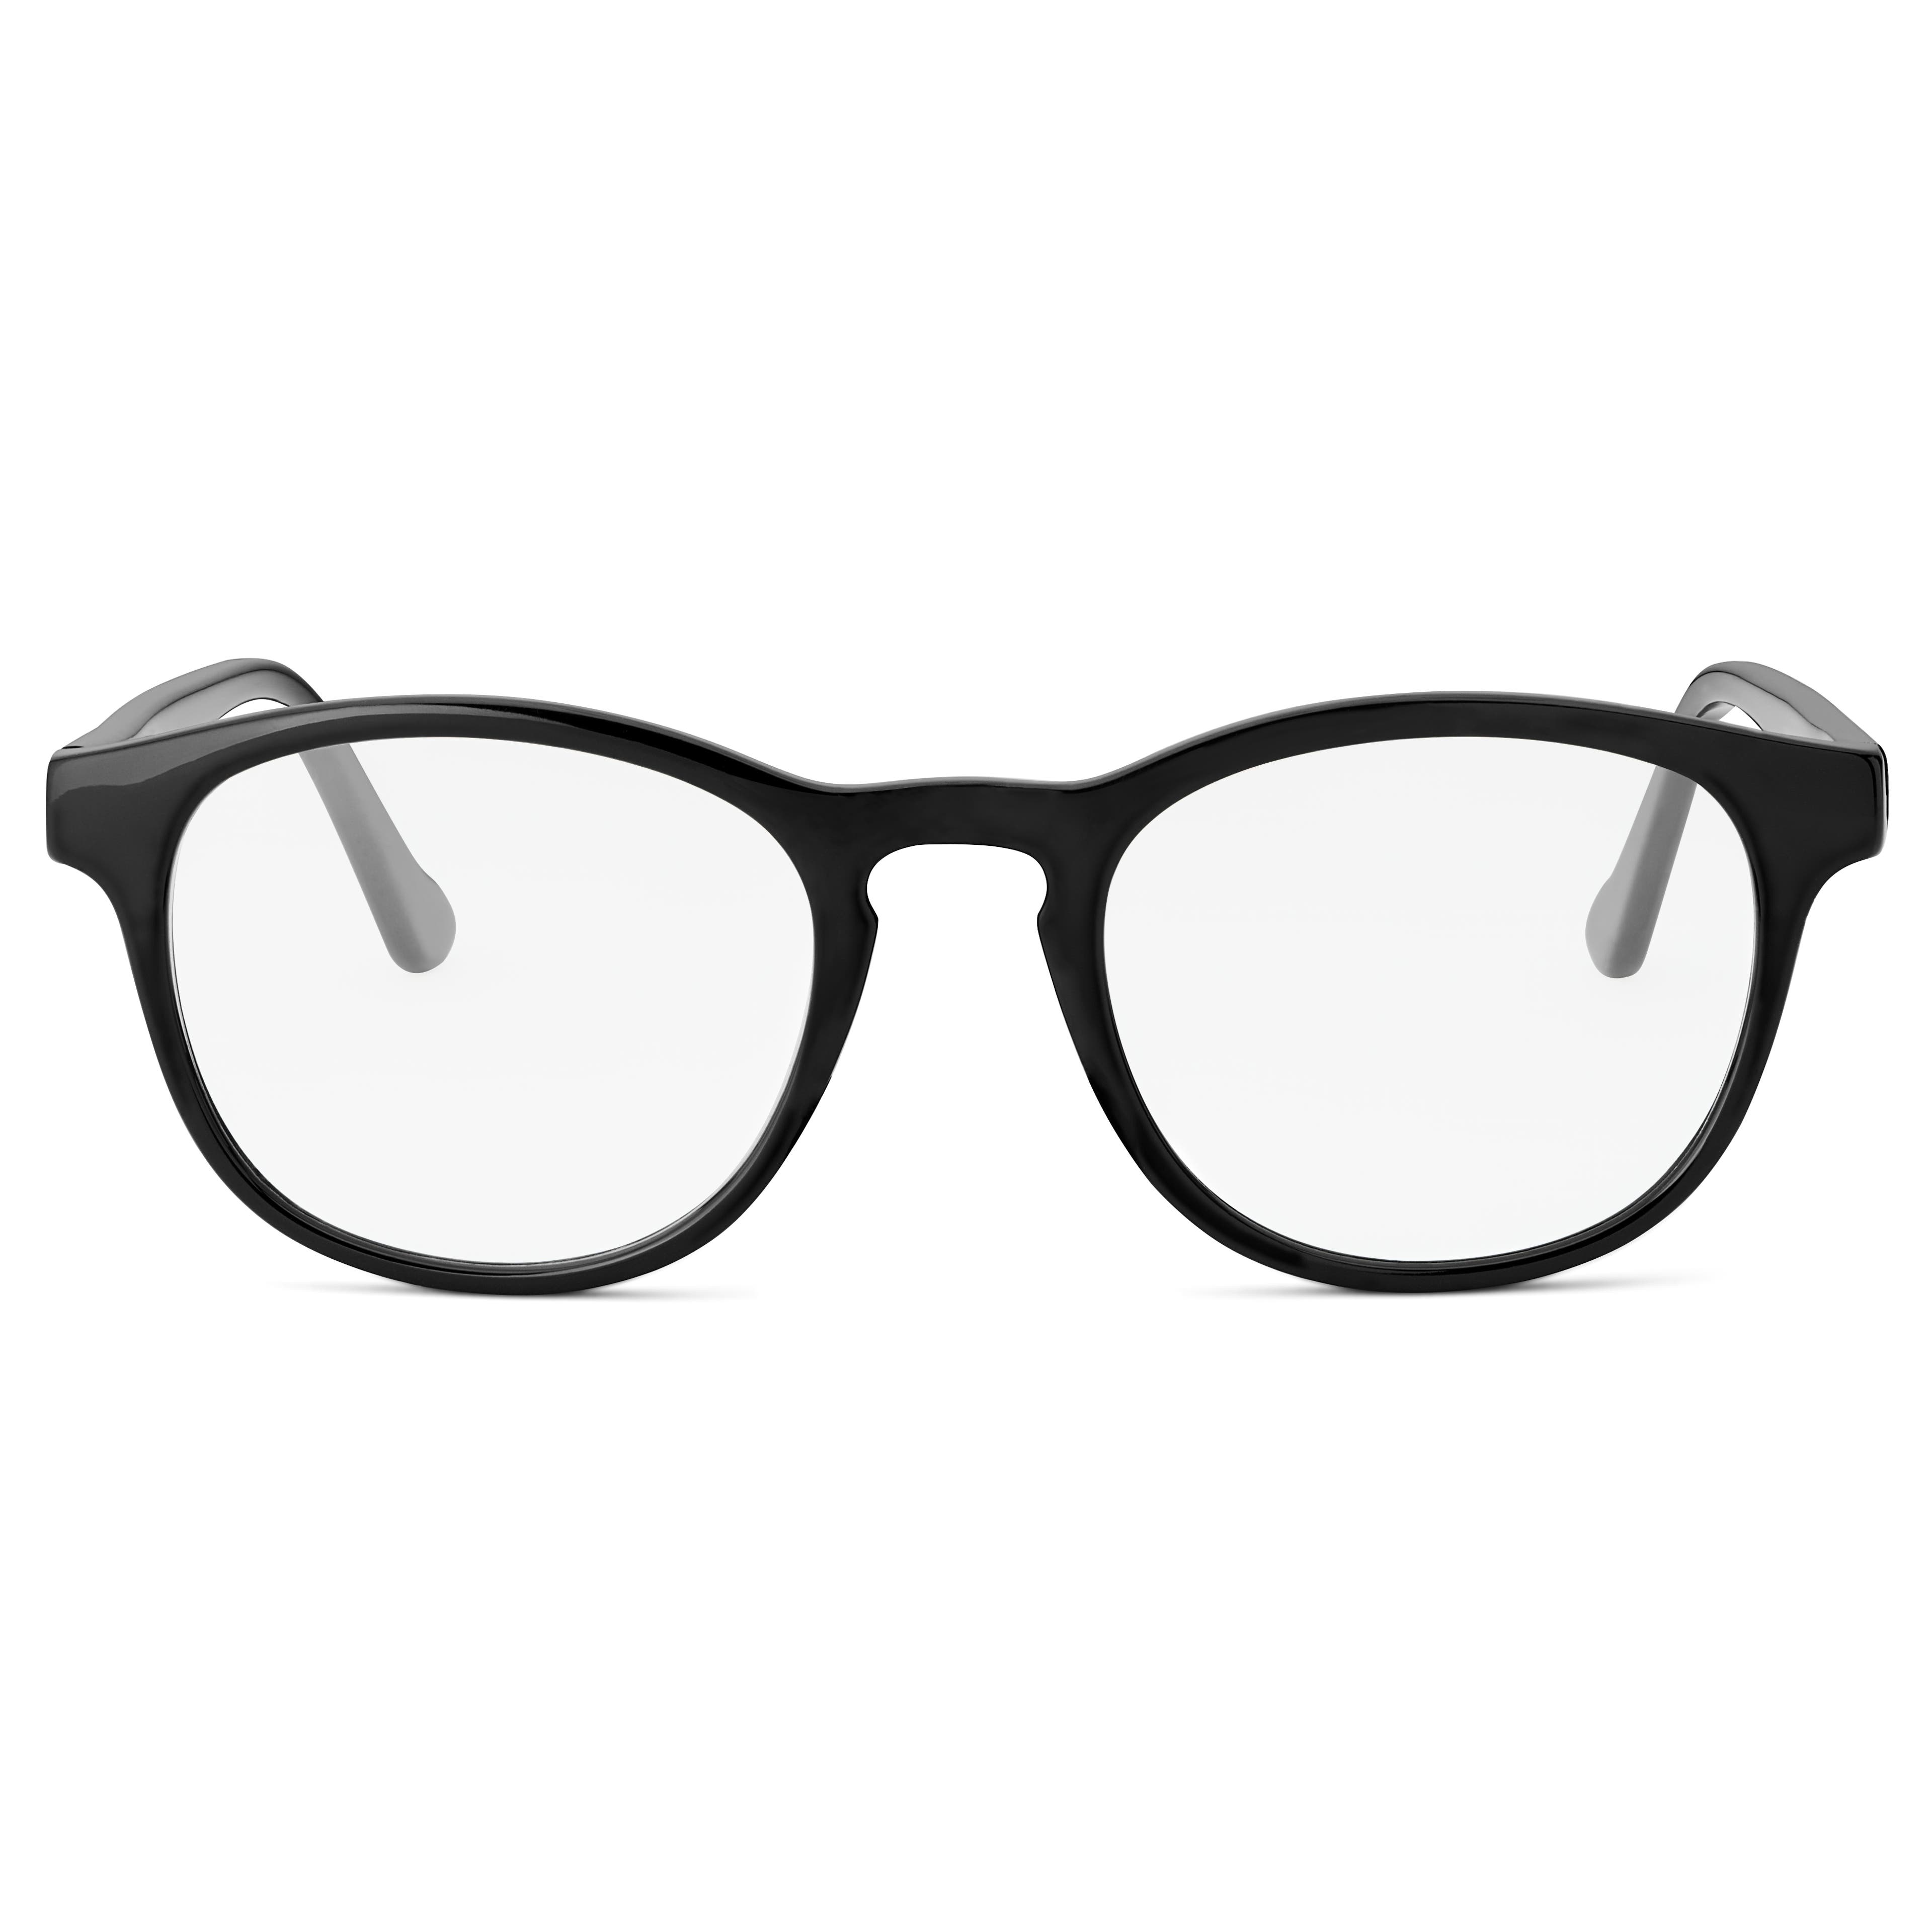 Briller uden styrke | 20 modeller til